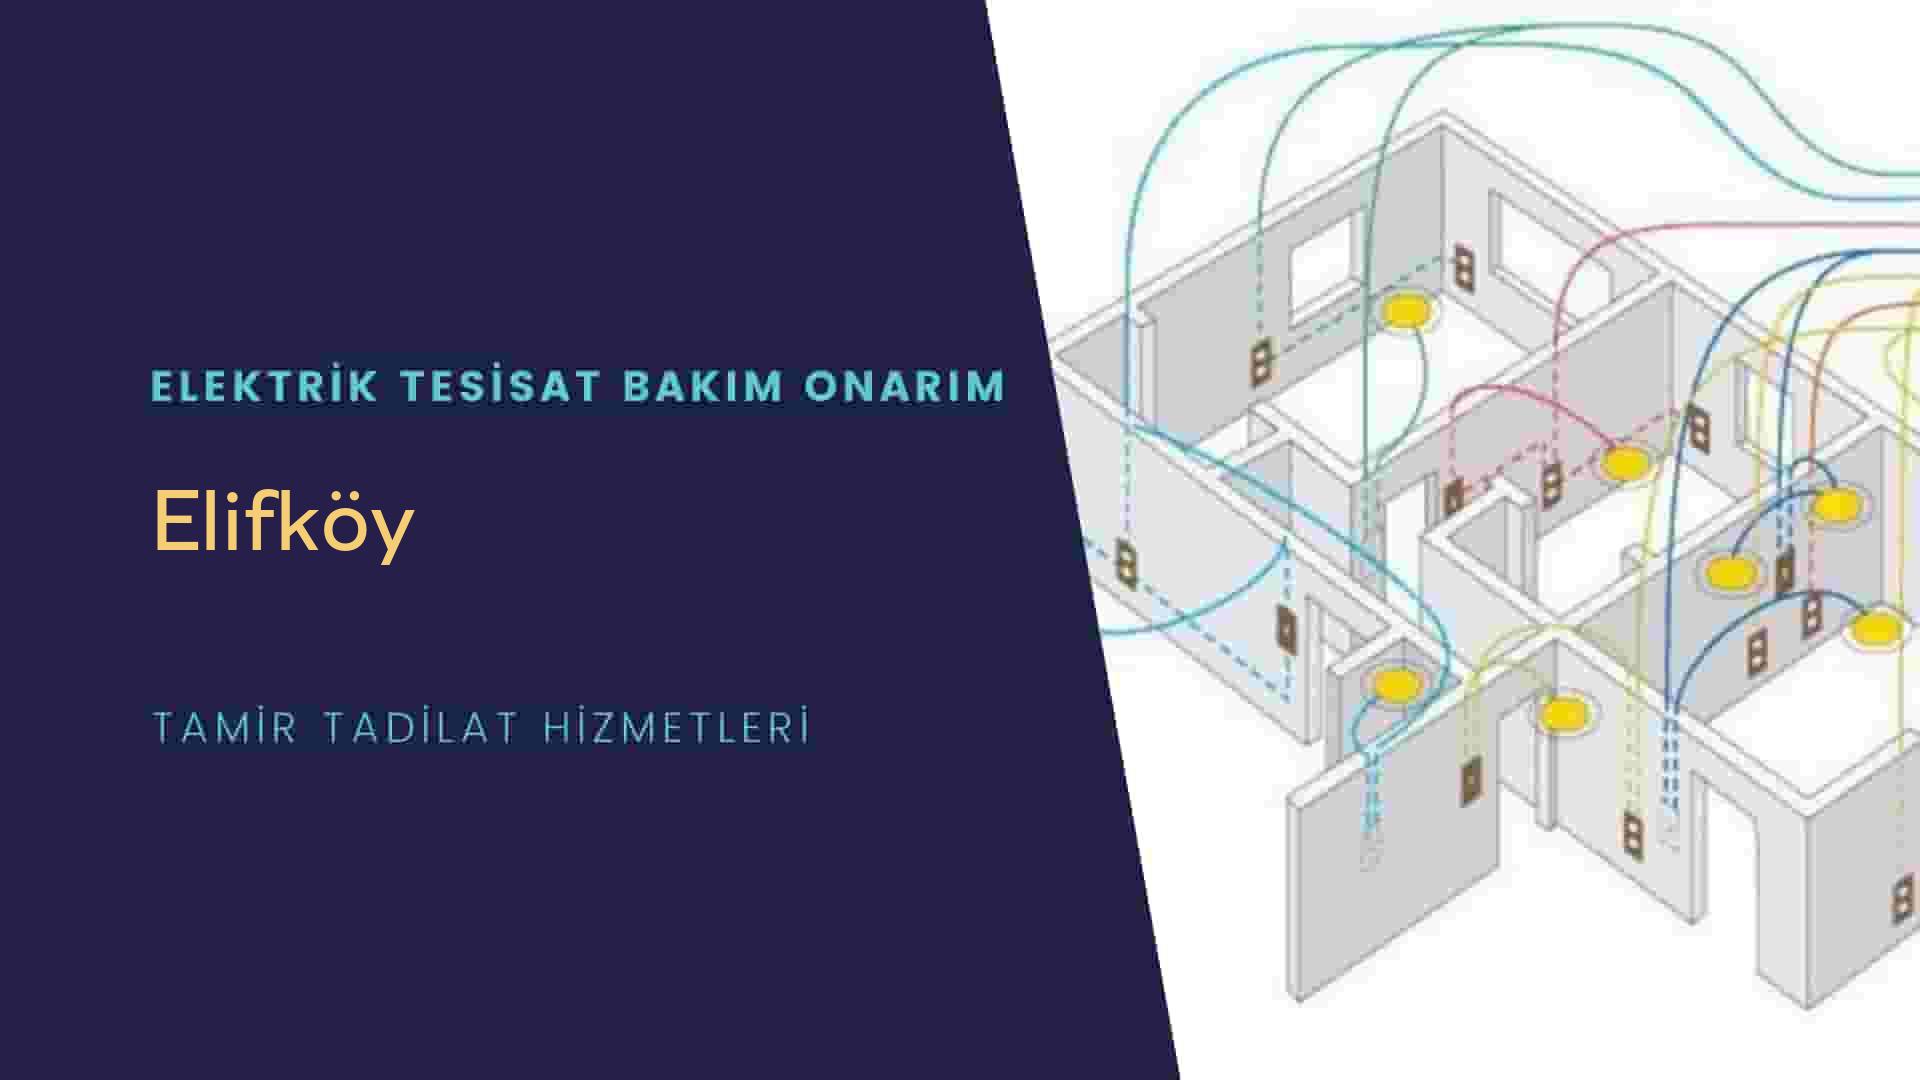 Elifköy'de elektrik tesisatı ustalarımı arıyorsunuz doğru adrestenizi Elifköy elektrik tesisatı ustalarımız 7/24 sizlere hizmet vermekten mutluluk duyar.